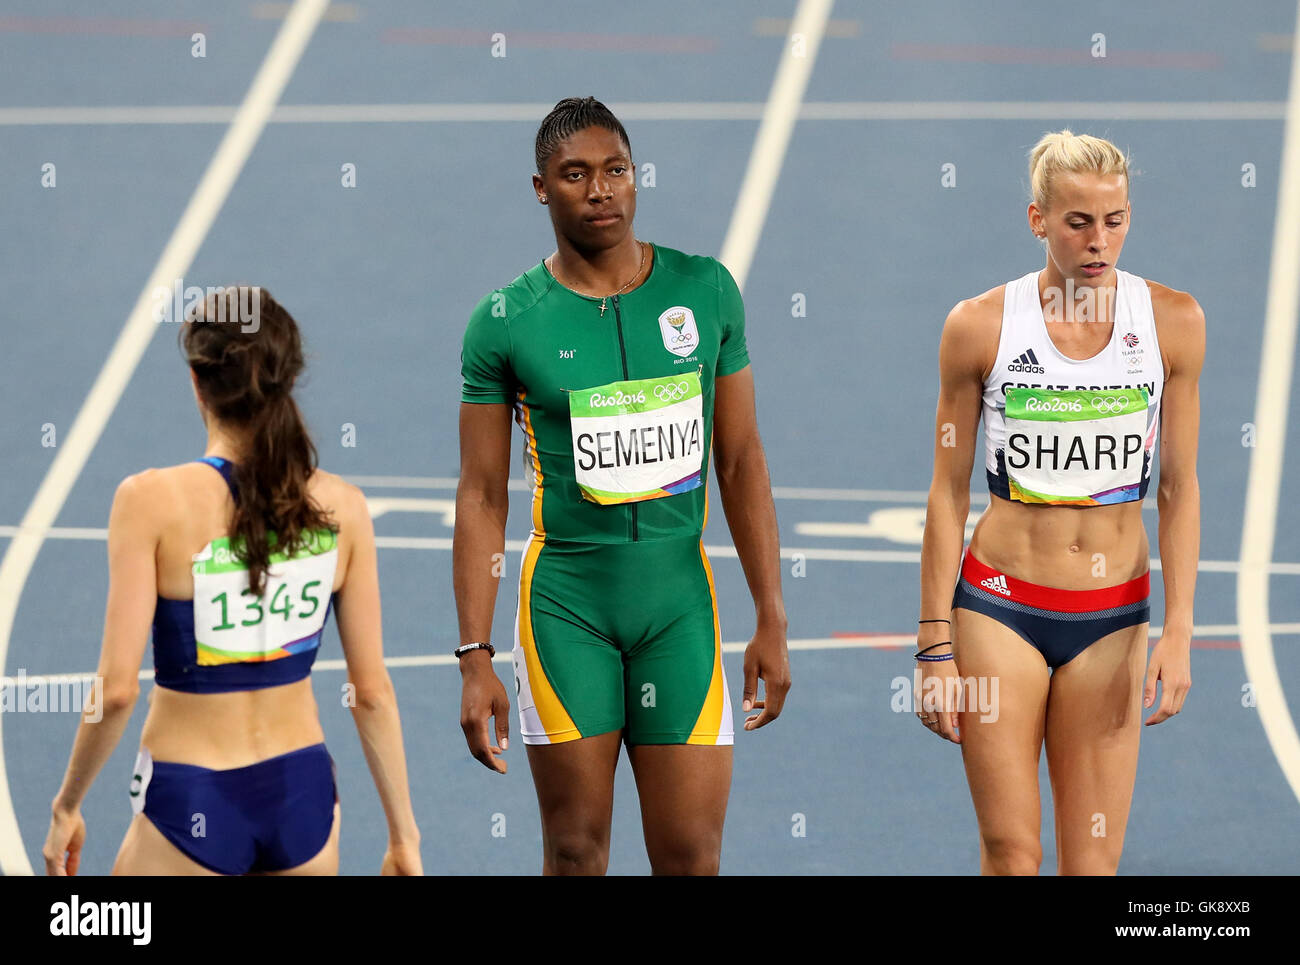 caster-semenya-sudafrica-centro-y-el-de-gran-bretana-lynsey-sharp-derecha-durante-la-tercera-semifinal-de-los-800-metros-femeninos-en-el-estadio-olimpico-en-la-decimotercera-jornada-de-los-juegos-olimpicos-de-rio-de-janeiro-brasil-gk8xxb.jpg